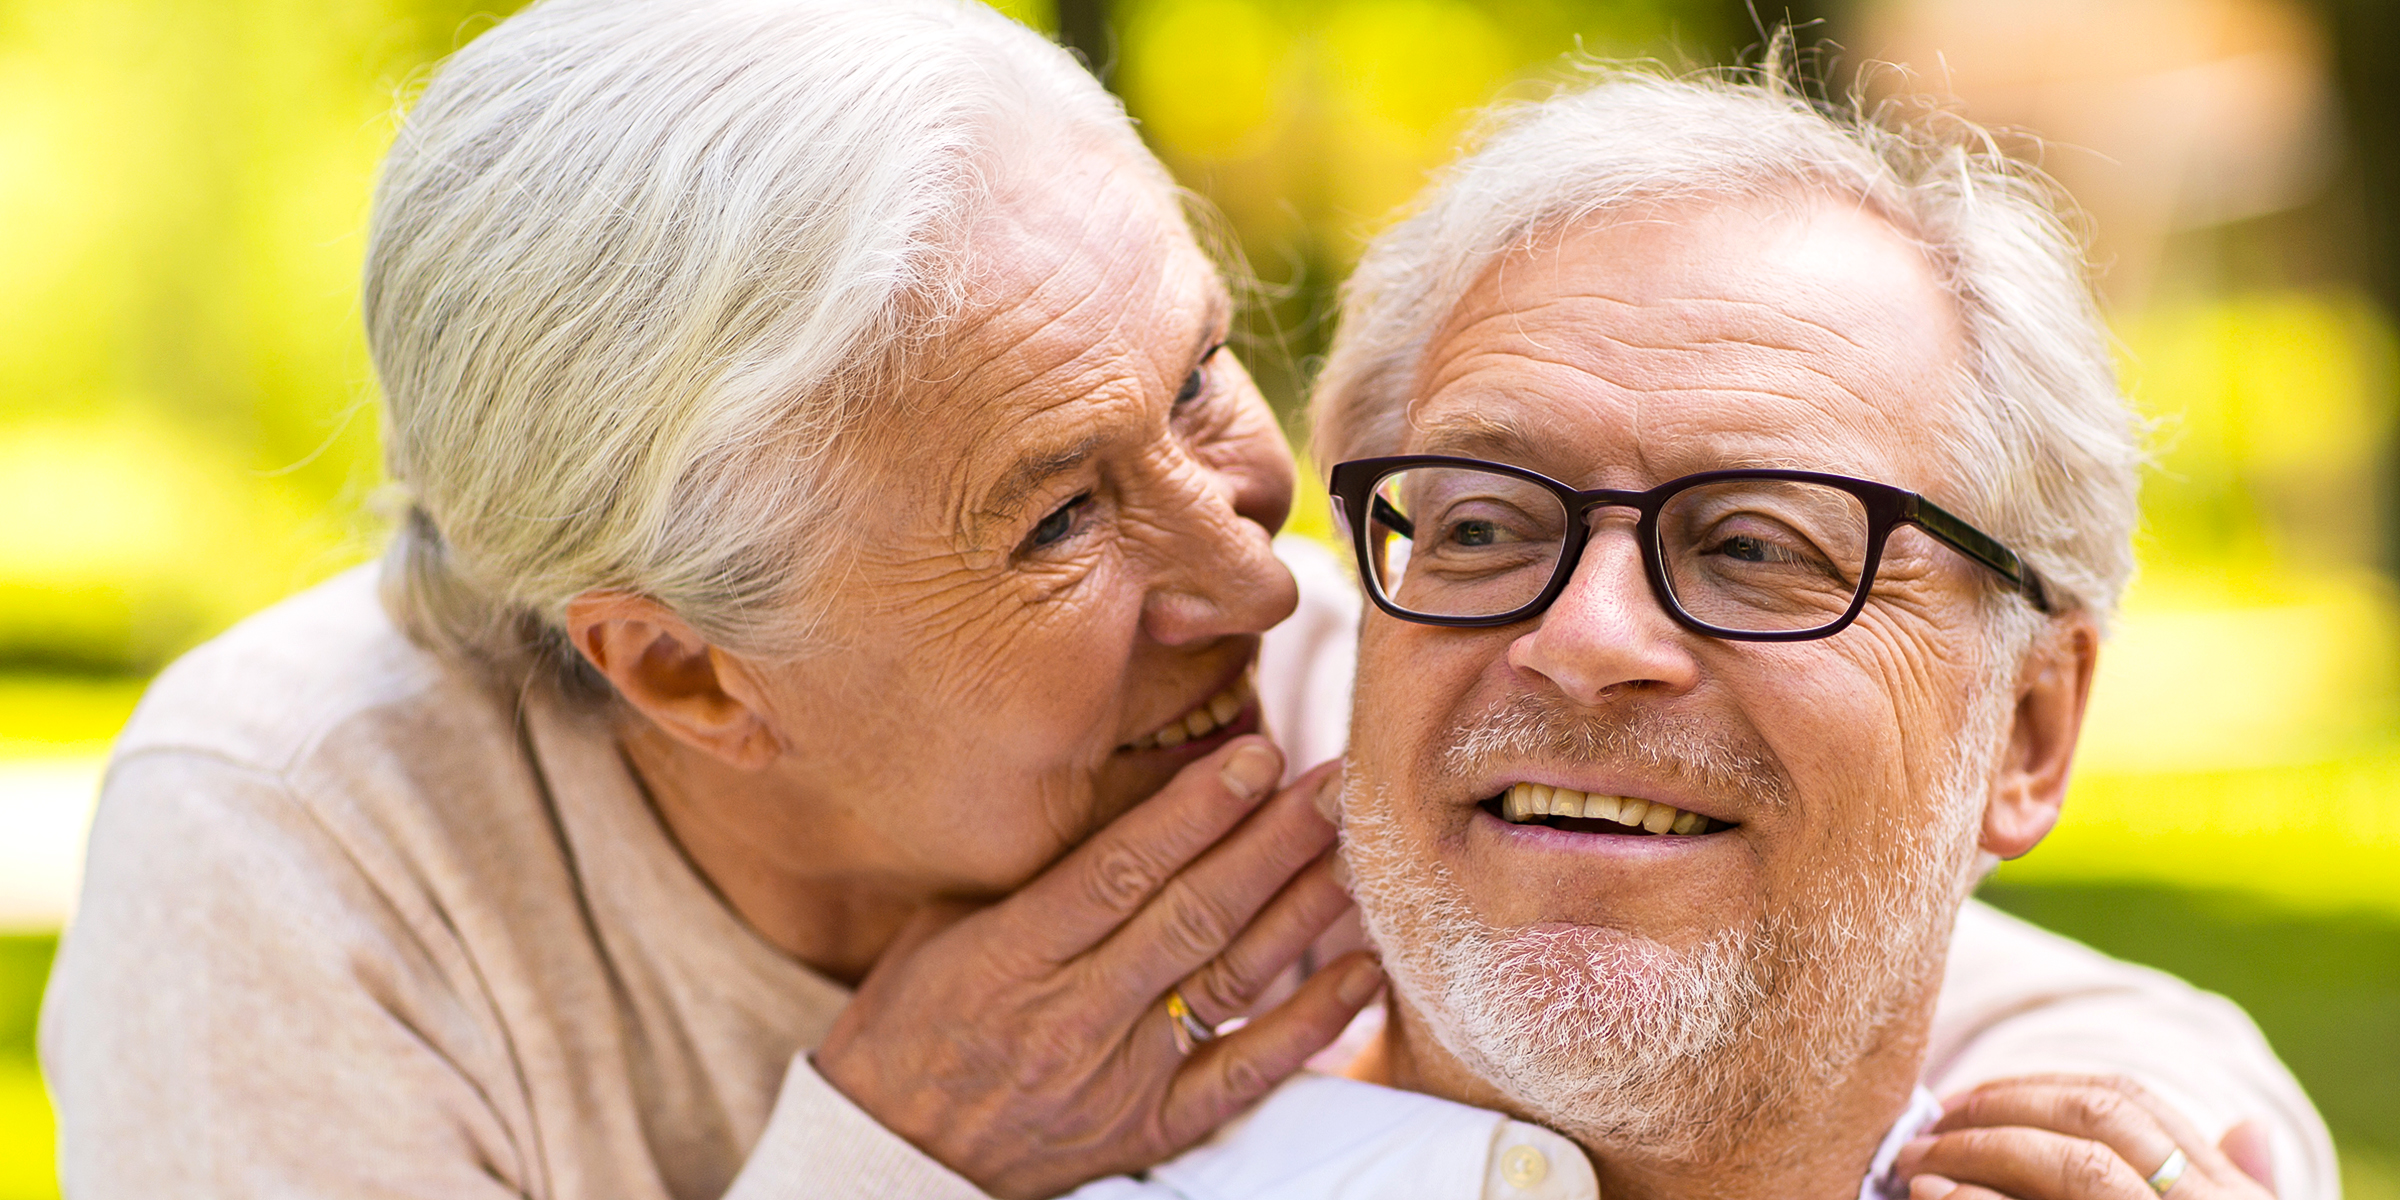 Eine ältere Frau, die ihrem Mann etwas zuflüstert | Quelle: Shutterstock